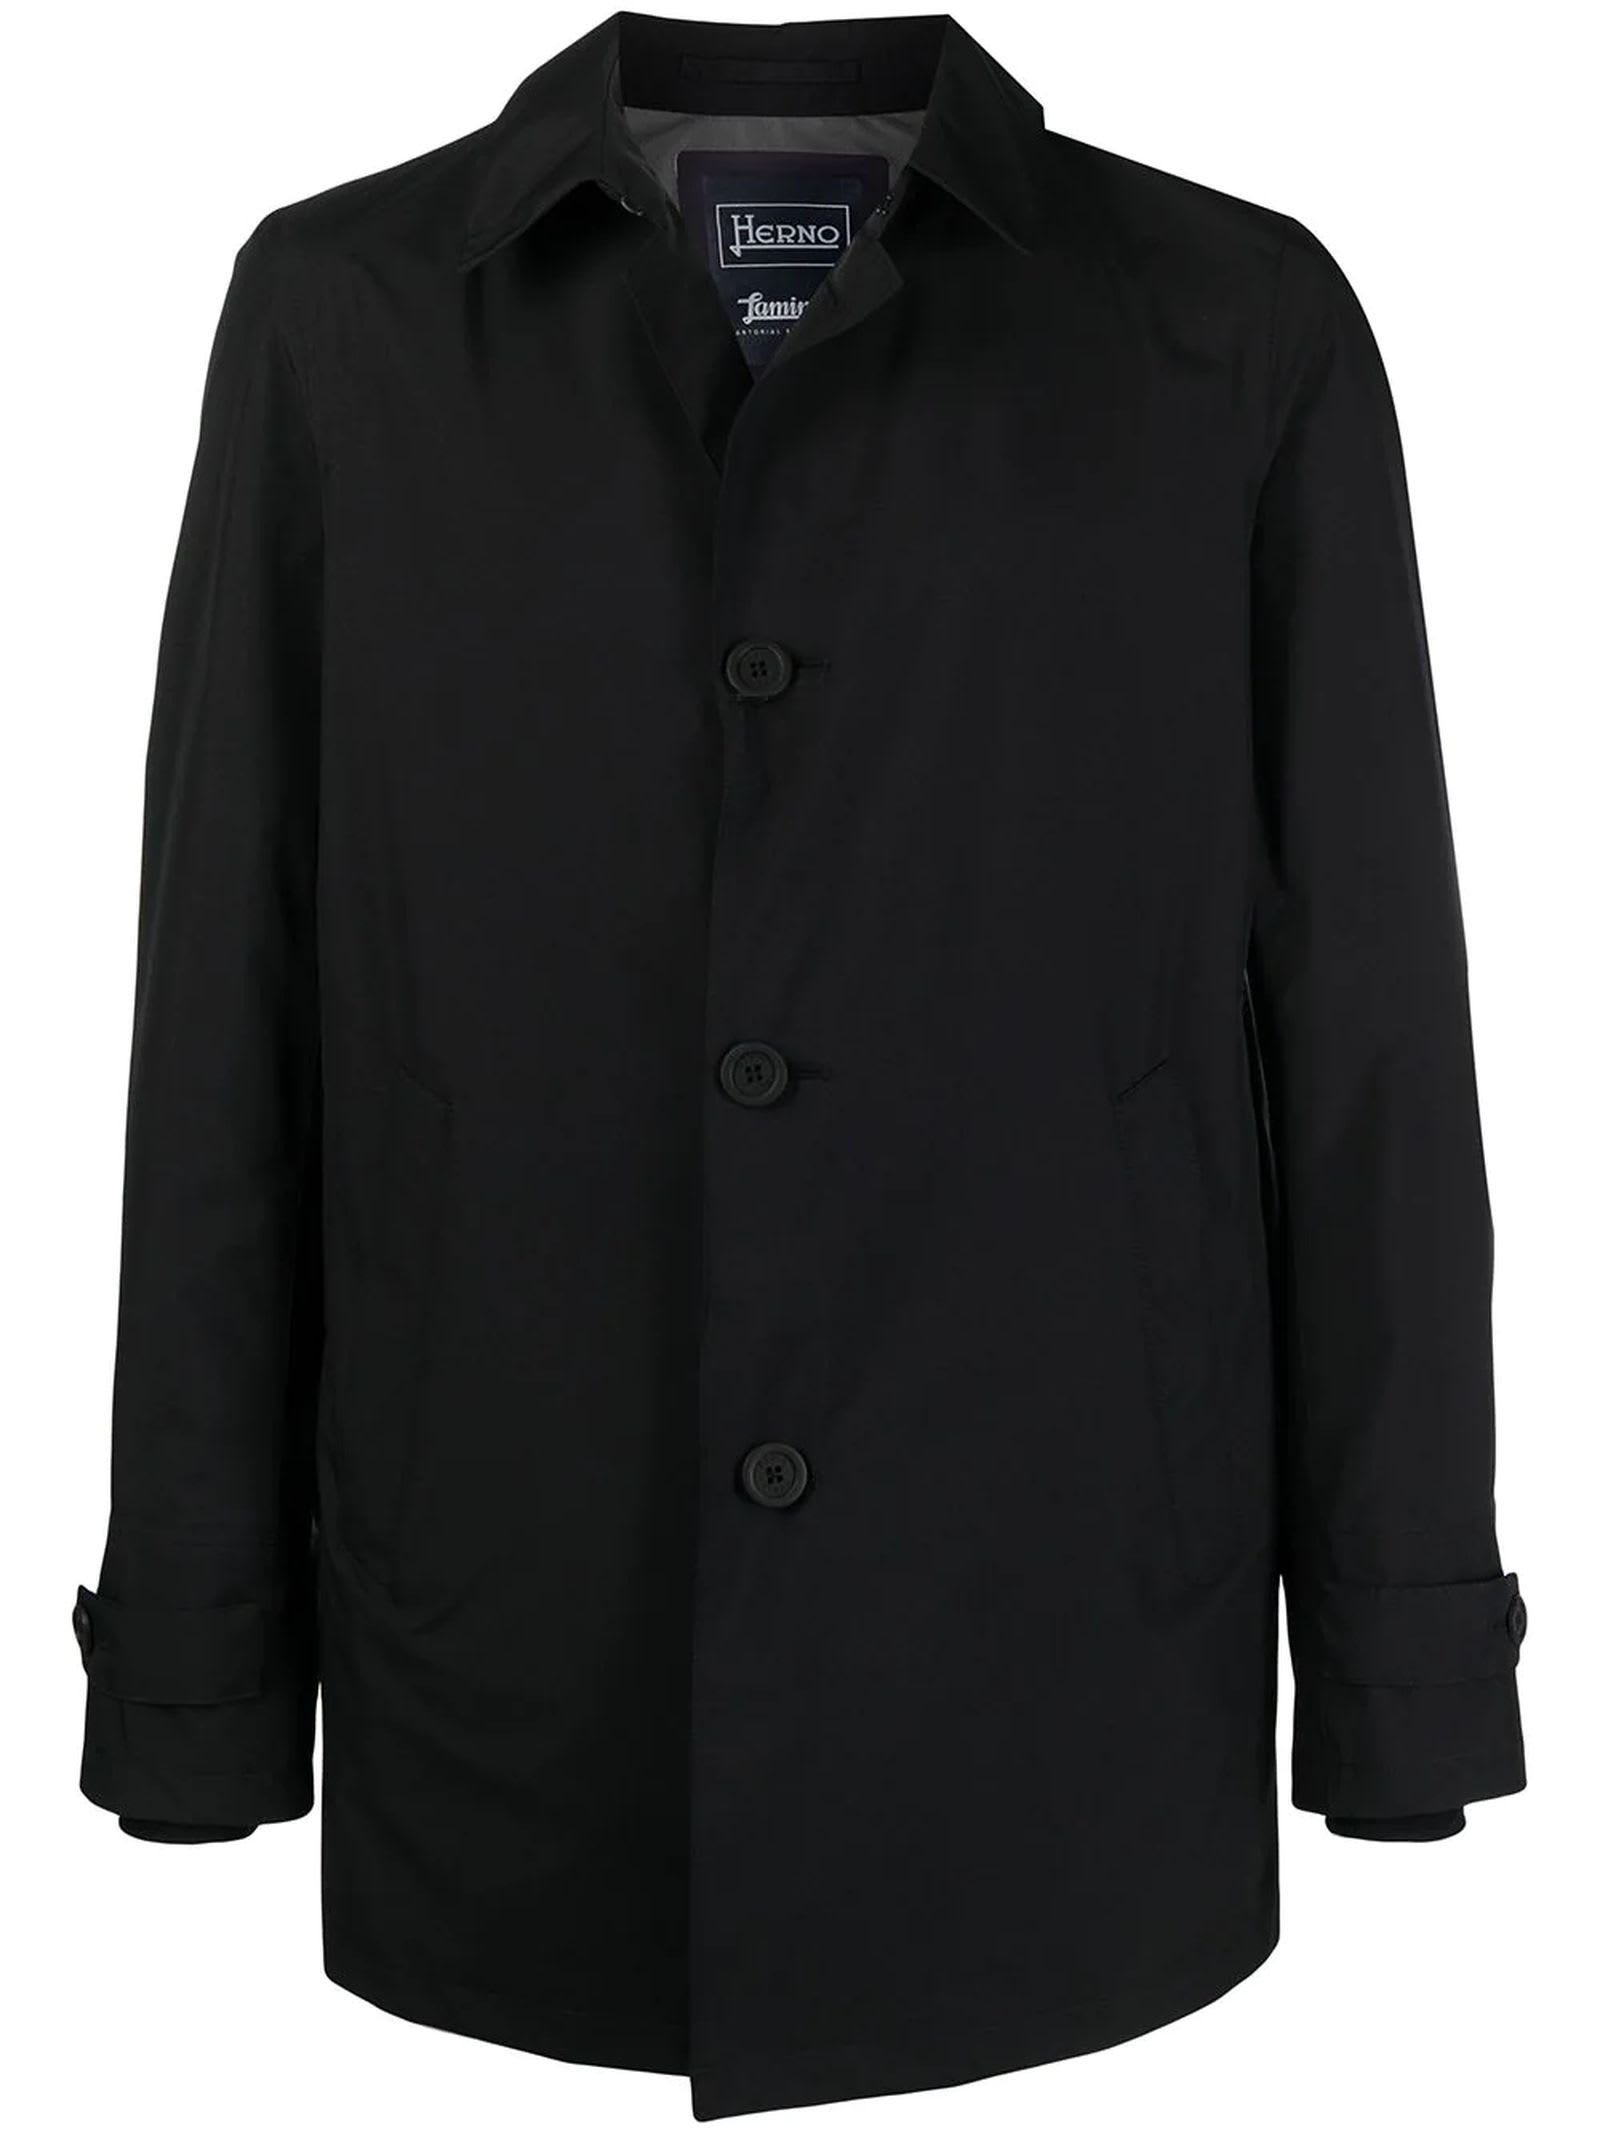 Shop Herno Black Waterproof Raincoat